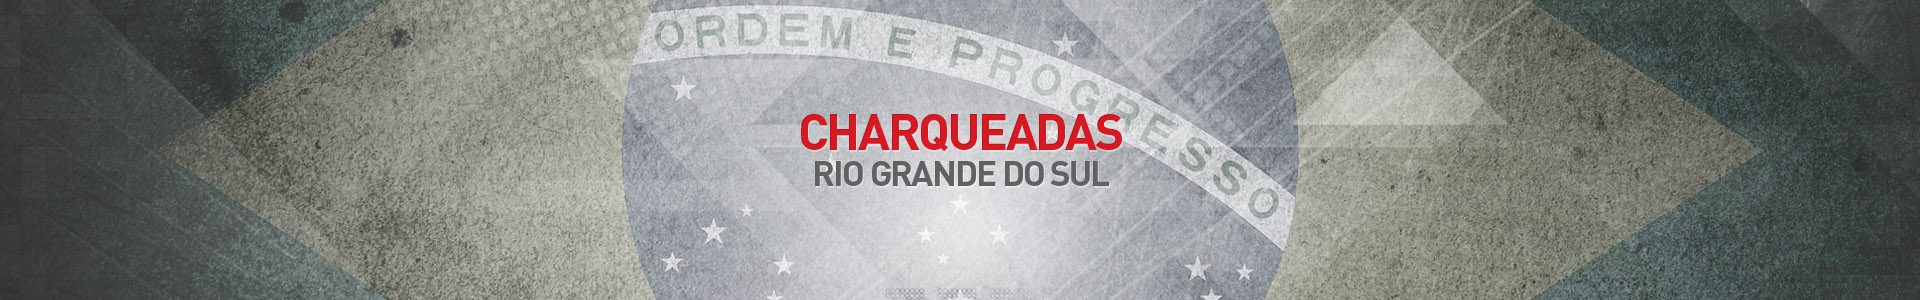 Topo-Cidades-Charqueadas-SBA